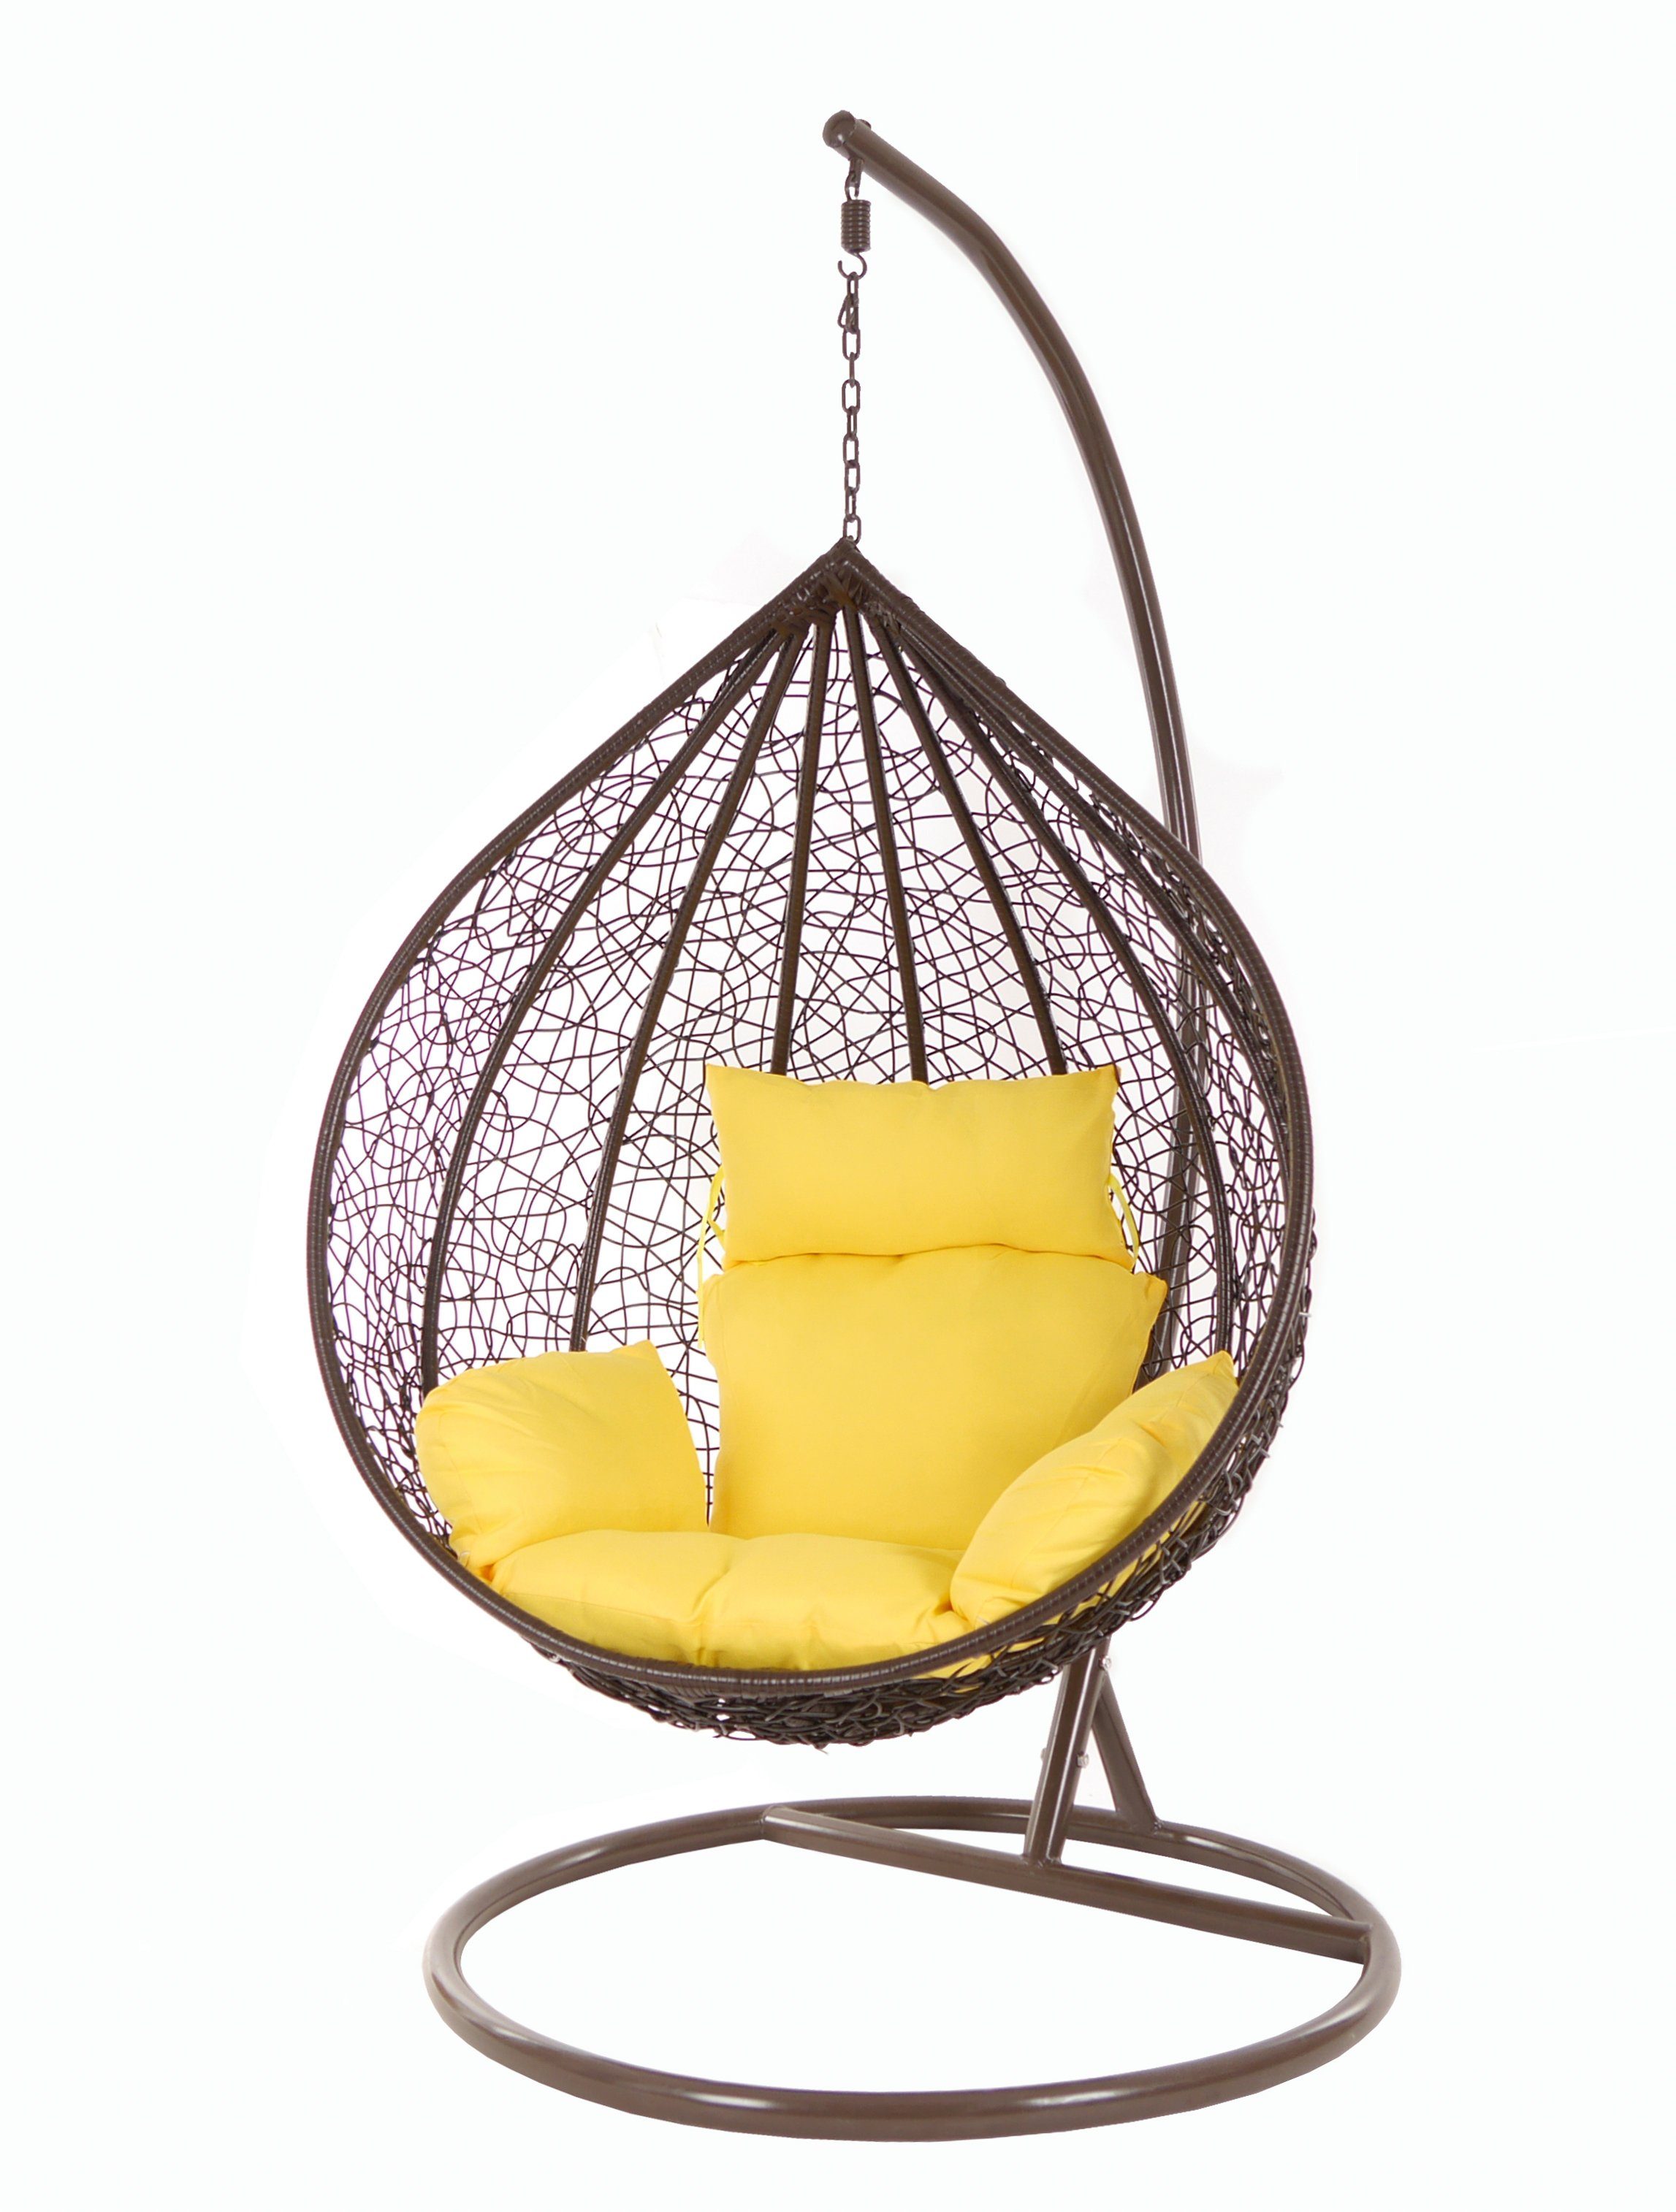 KIDEO Hängesessel Hängesessel MANACOR darkbrown, Swing Chair, braun, Schwebesessel, Hängesessel mit Gestell und Kissen gelb (2200 pineapple)